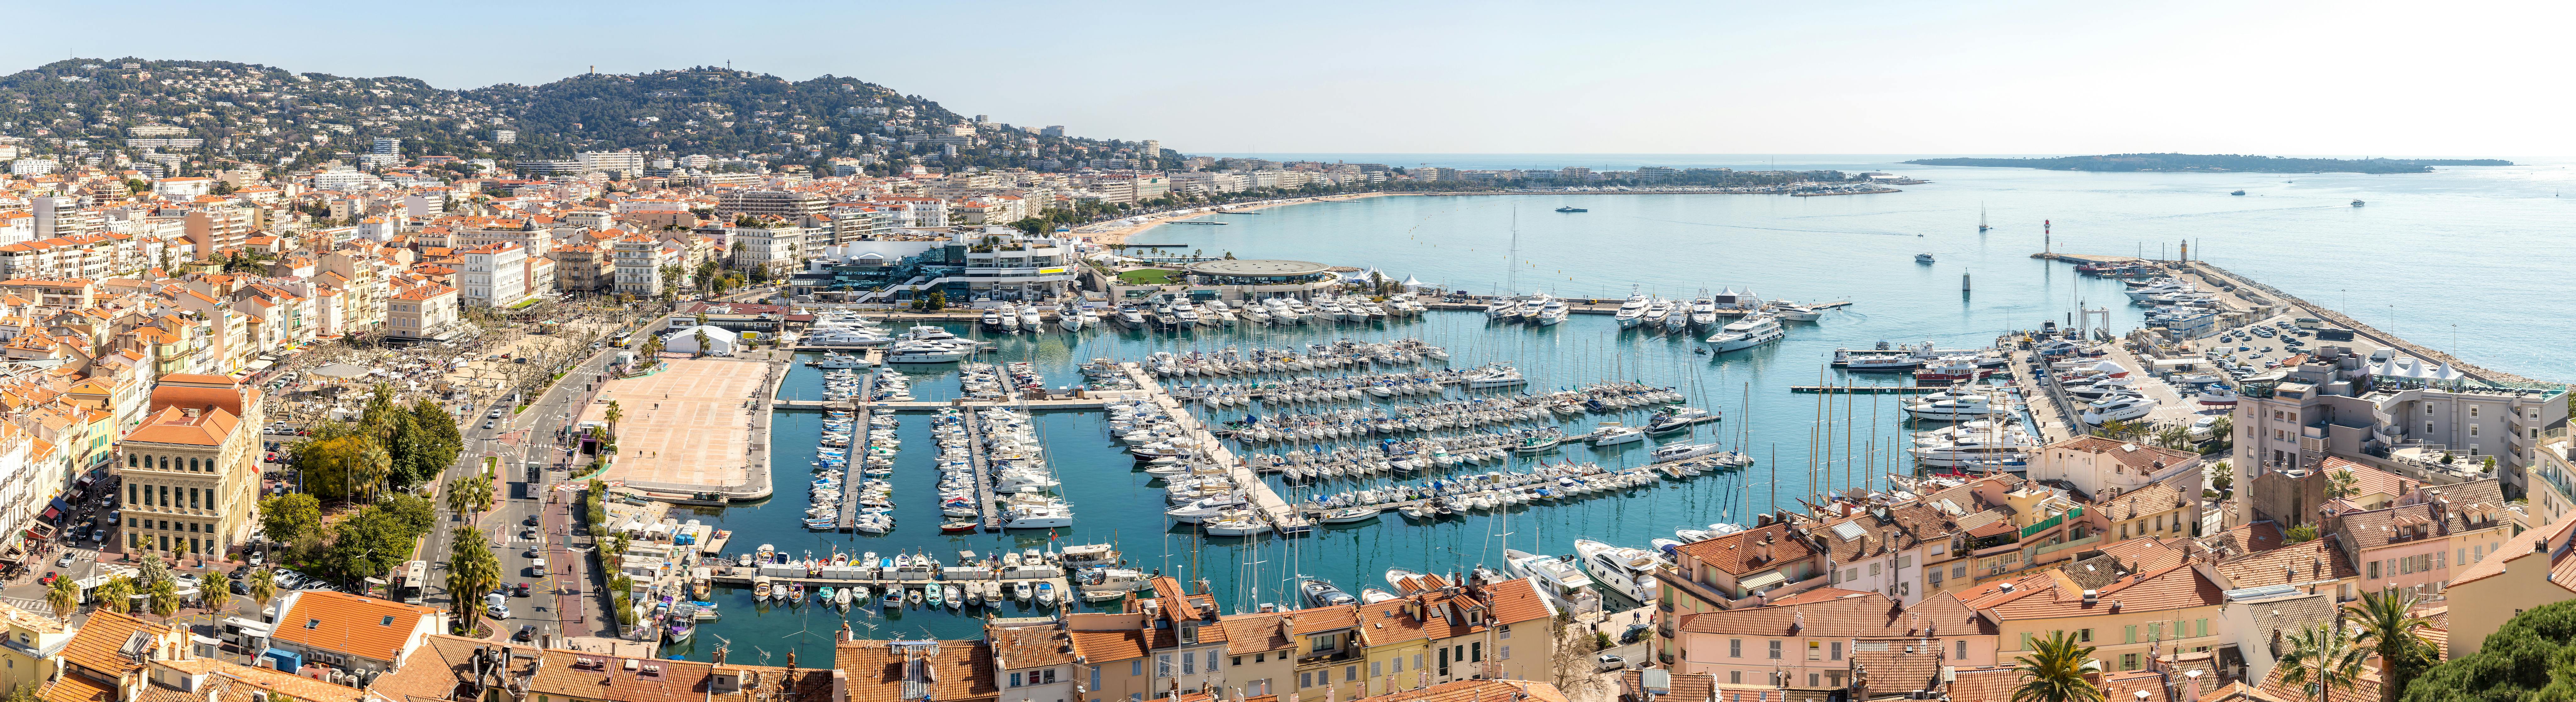 Viagem privativa de um dia inteiro na Provença saindo do porto de Cannes